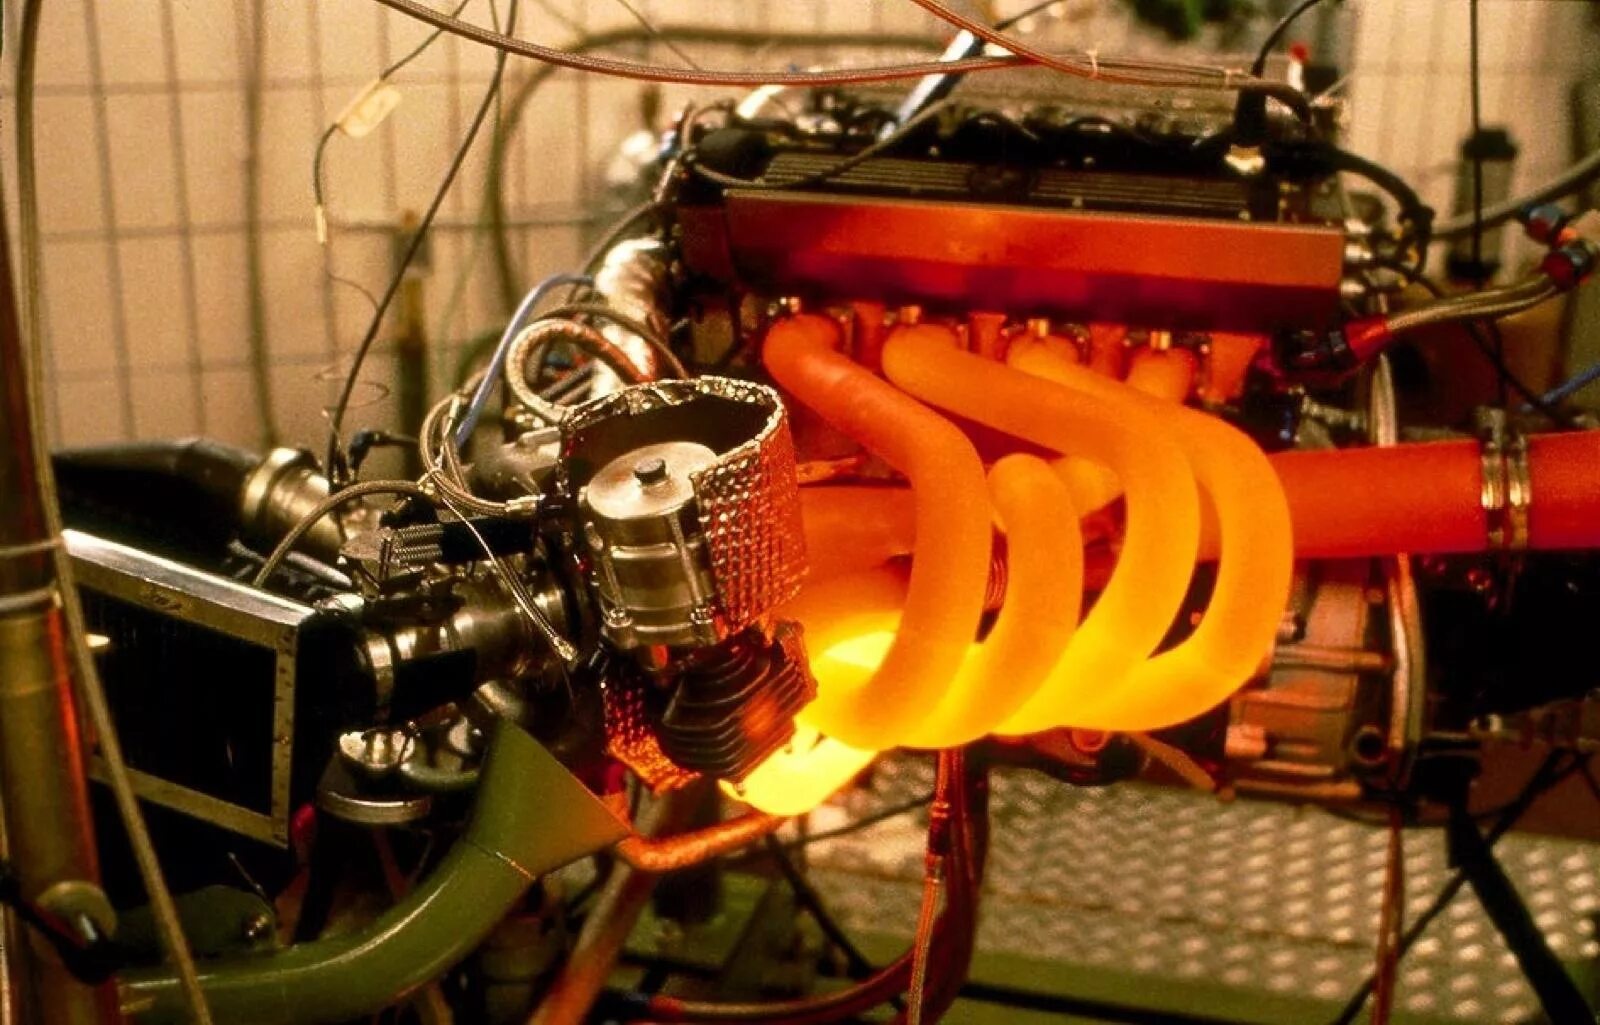 Двигатели БМВ турбо ф1. Двигатель BMW 1500 Л.С. BMW Turbo f1. Двигатель БМВ на 1500 л.с. В технике для охлаждения сильно нагревающихся